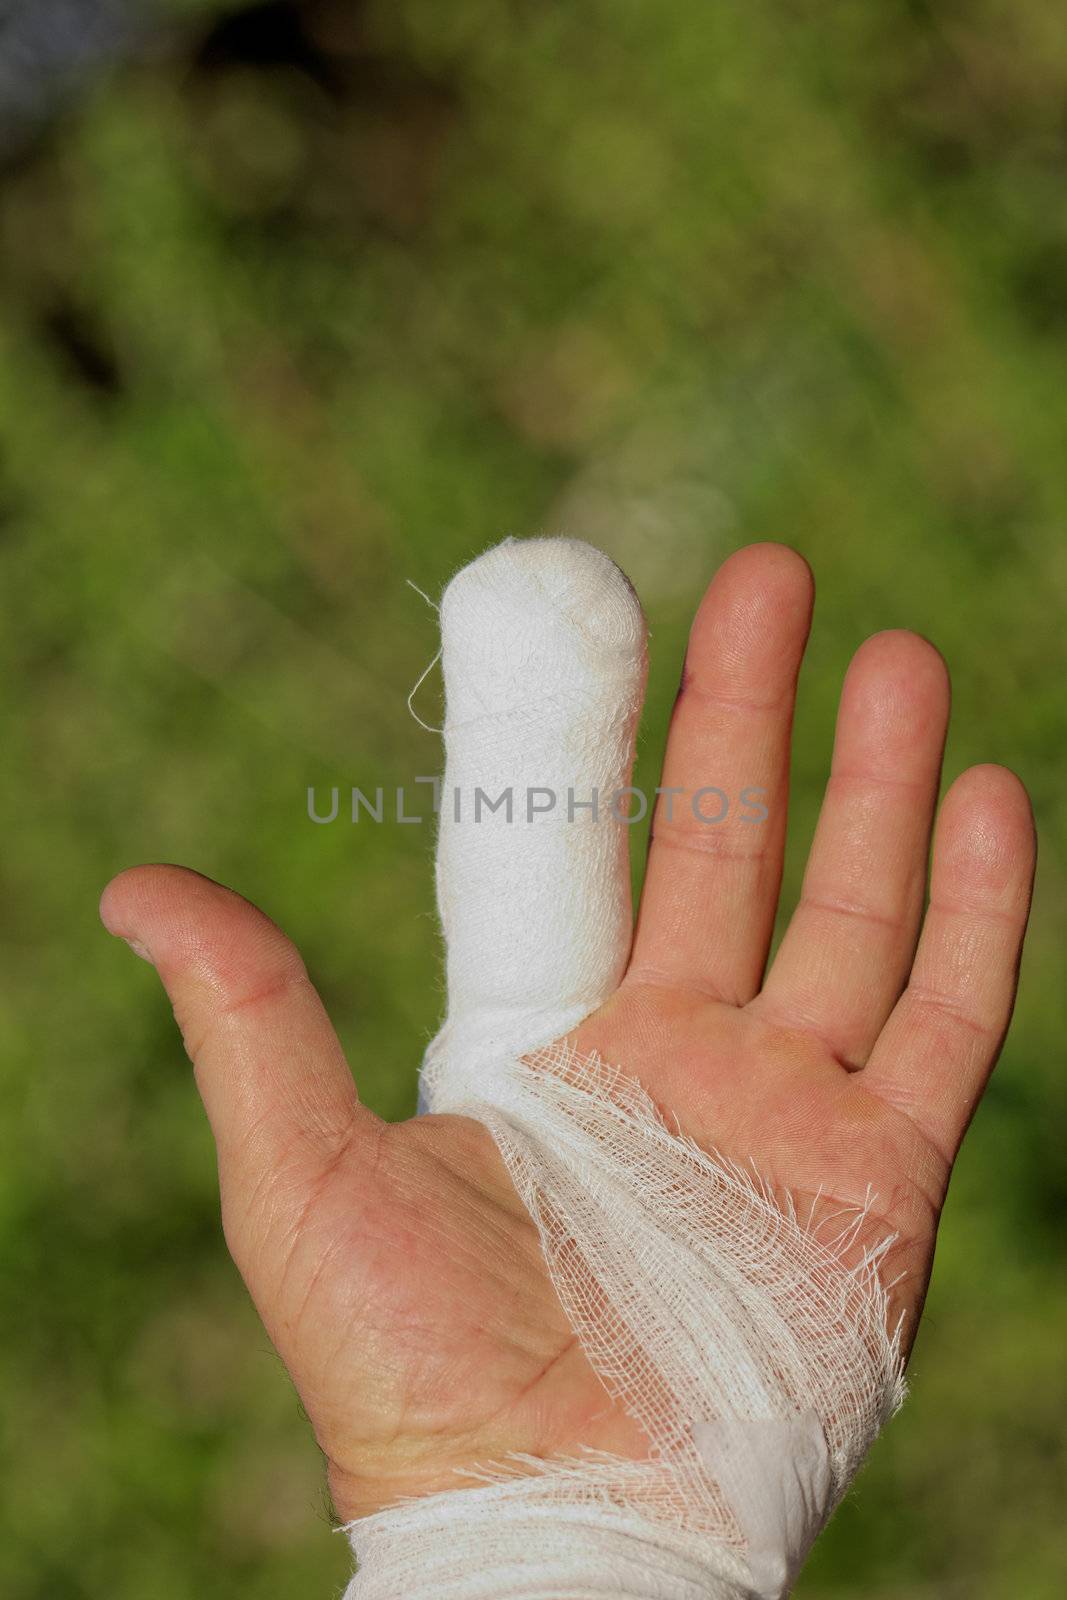 White medicine bandage on human injury hand finger by NagyDodo